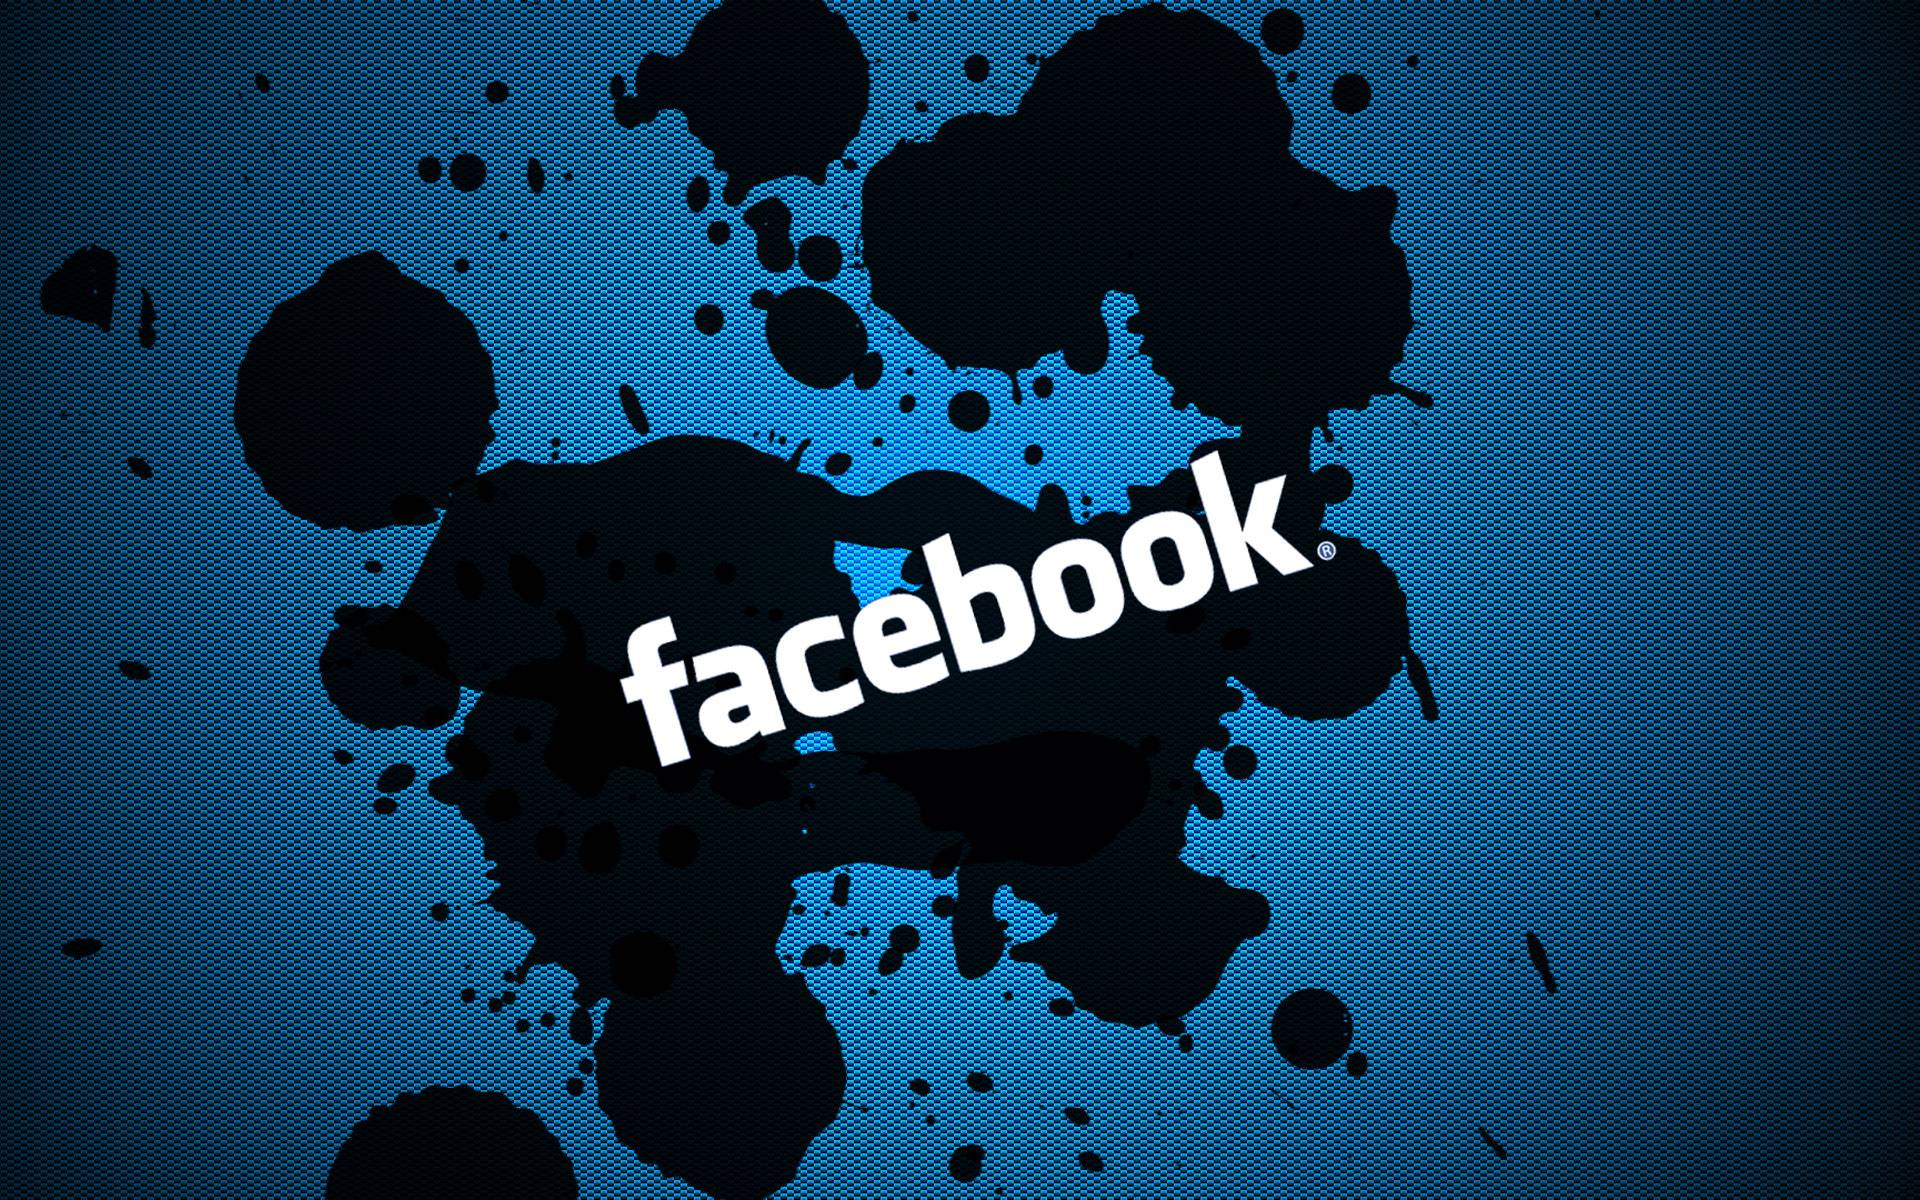 fond d'écran facebook hd,police de caractère,texte,conception graphique,conception,monde